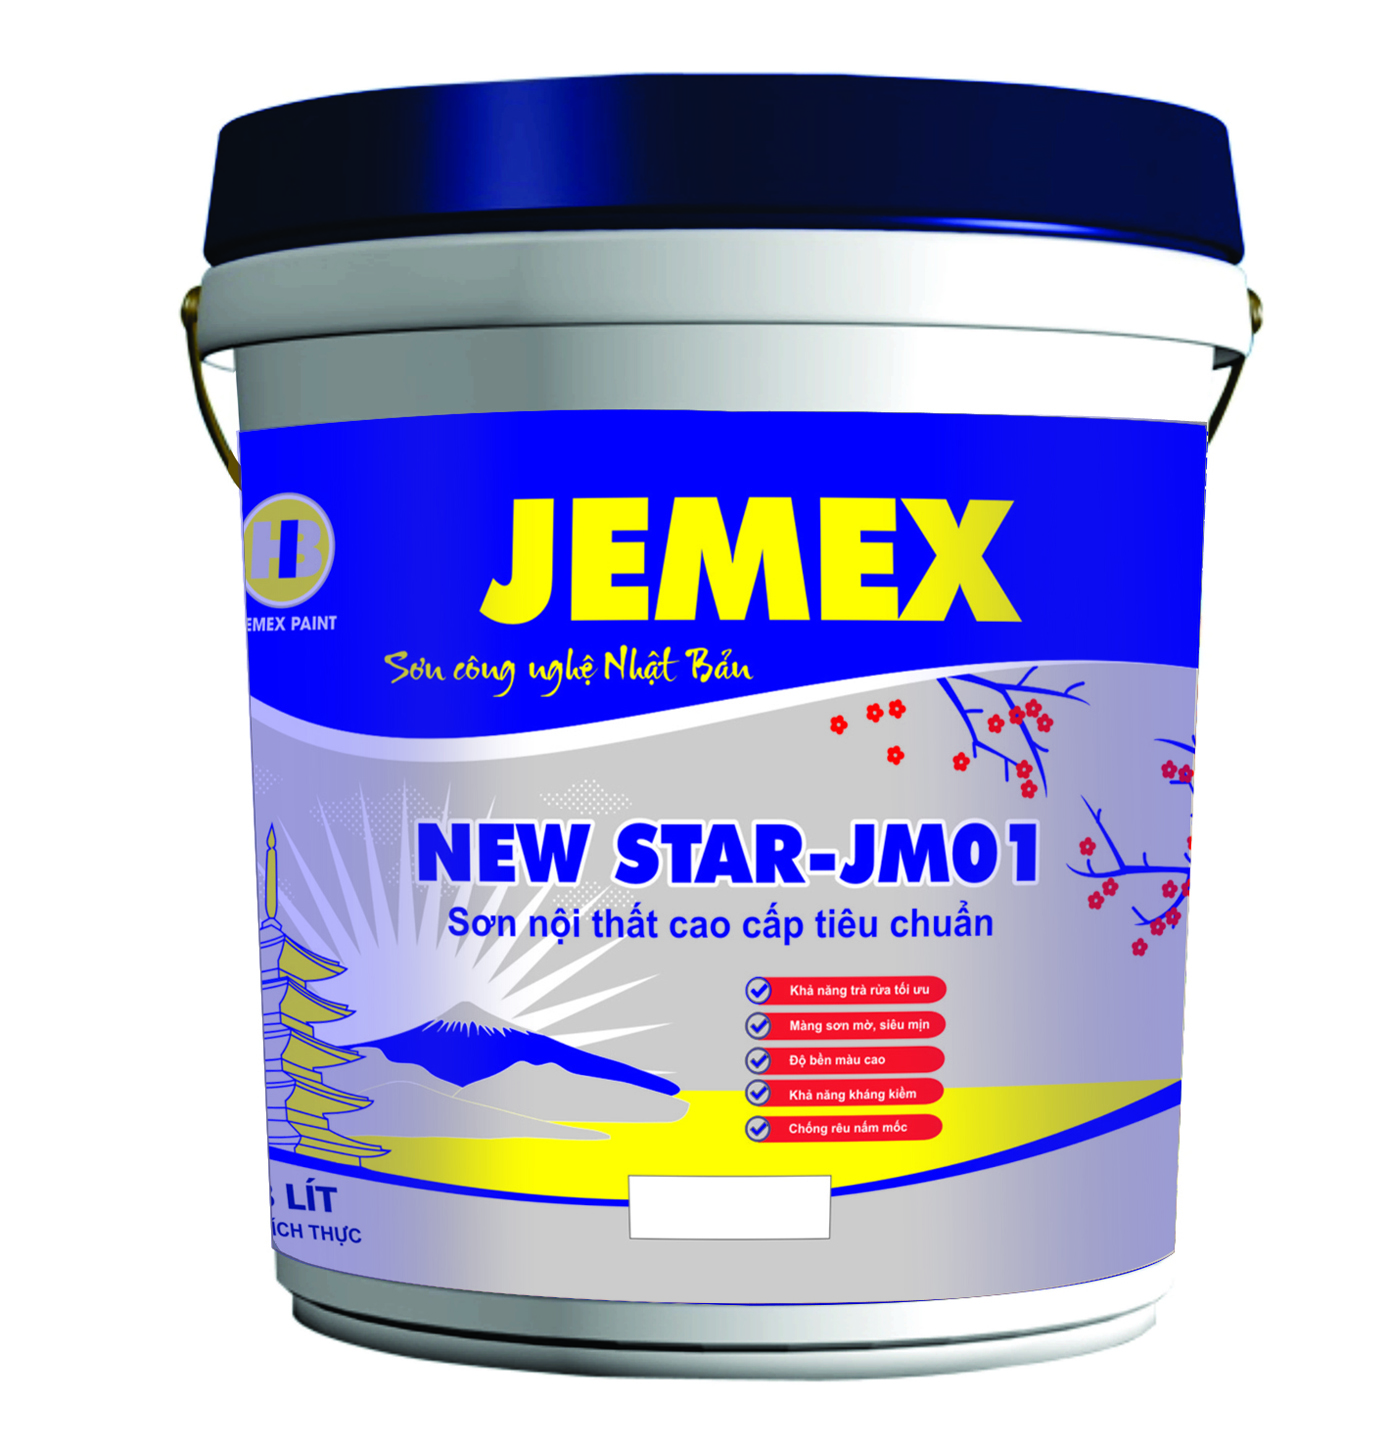 Sơn nội thất cao cấp tiêu chuẩn New Star - JM01